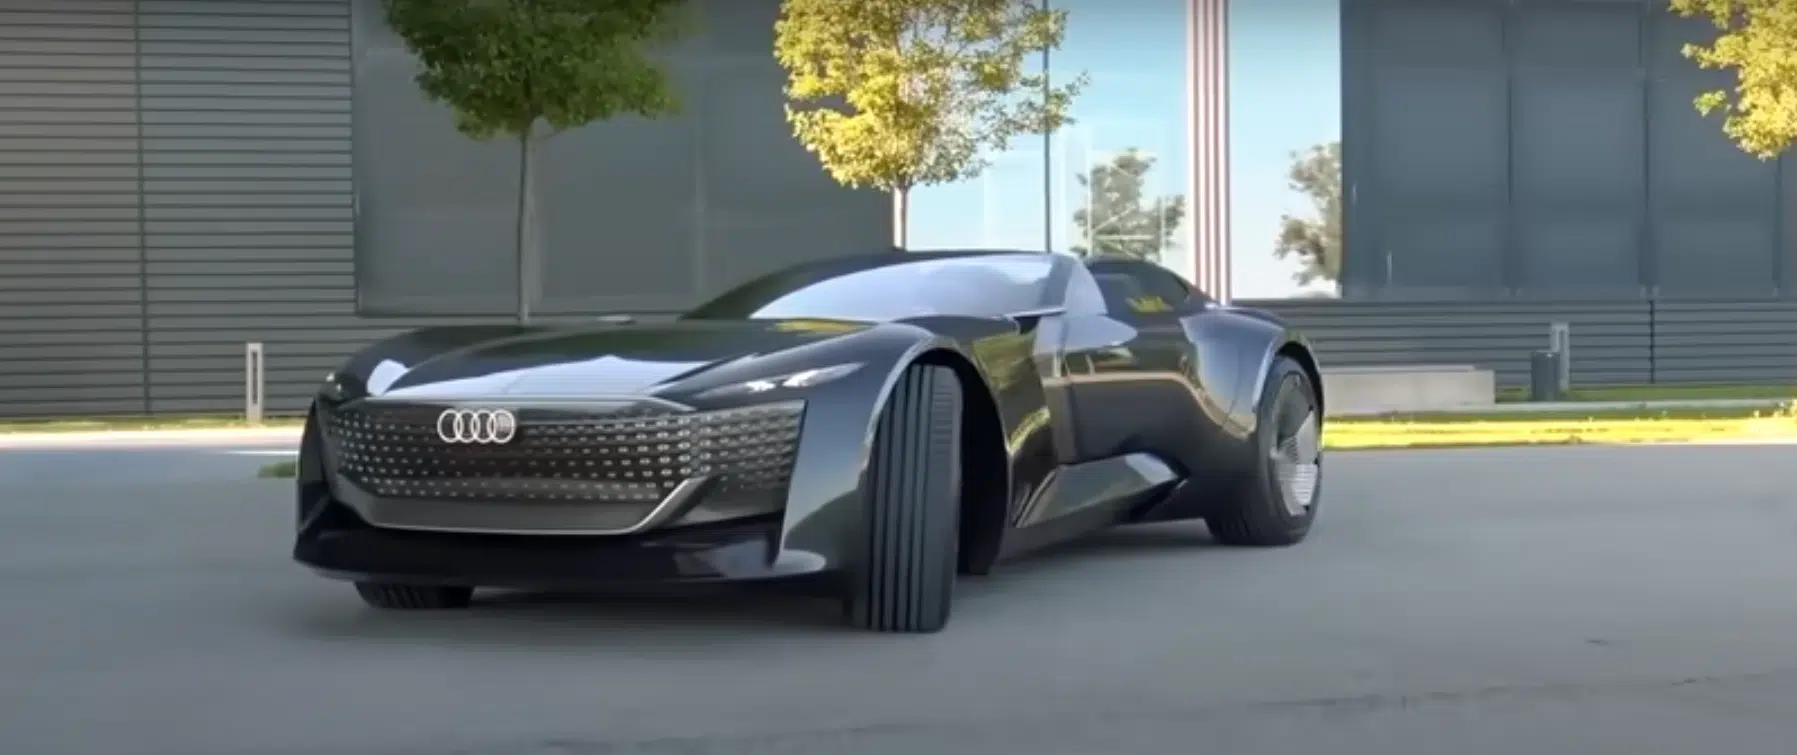 watch-2021s-top-ten-craziest-concept-cars